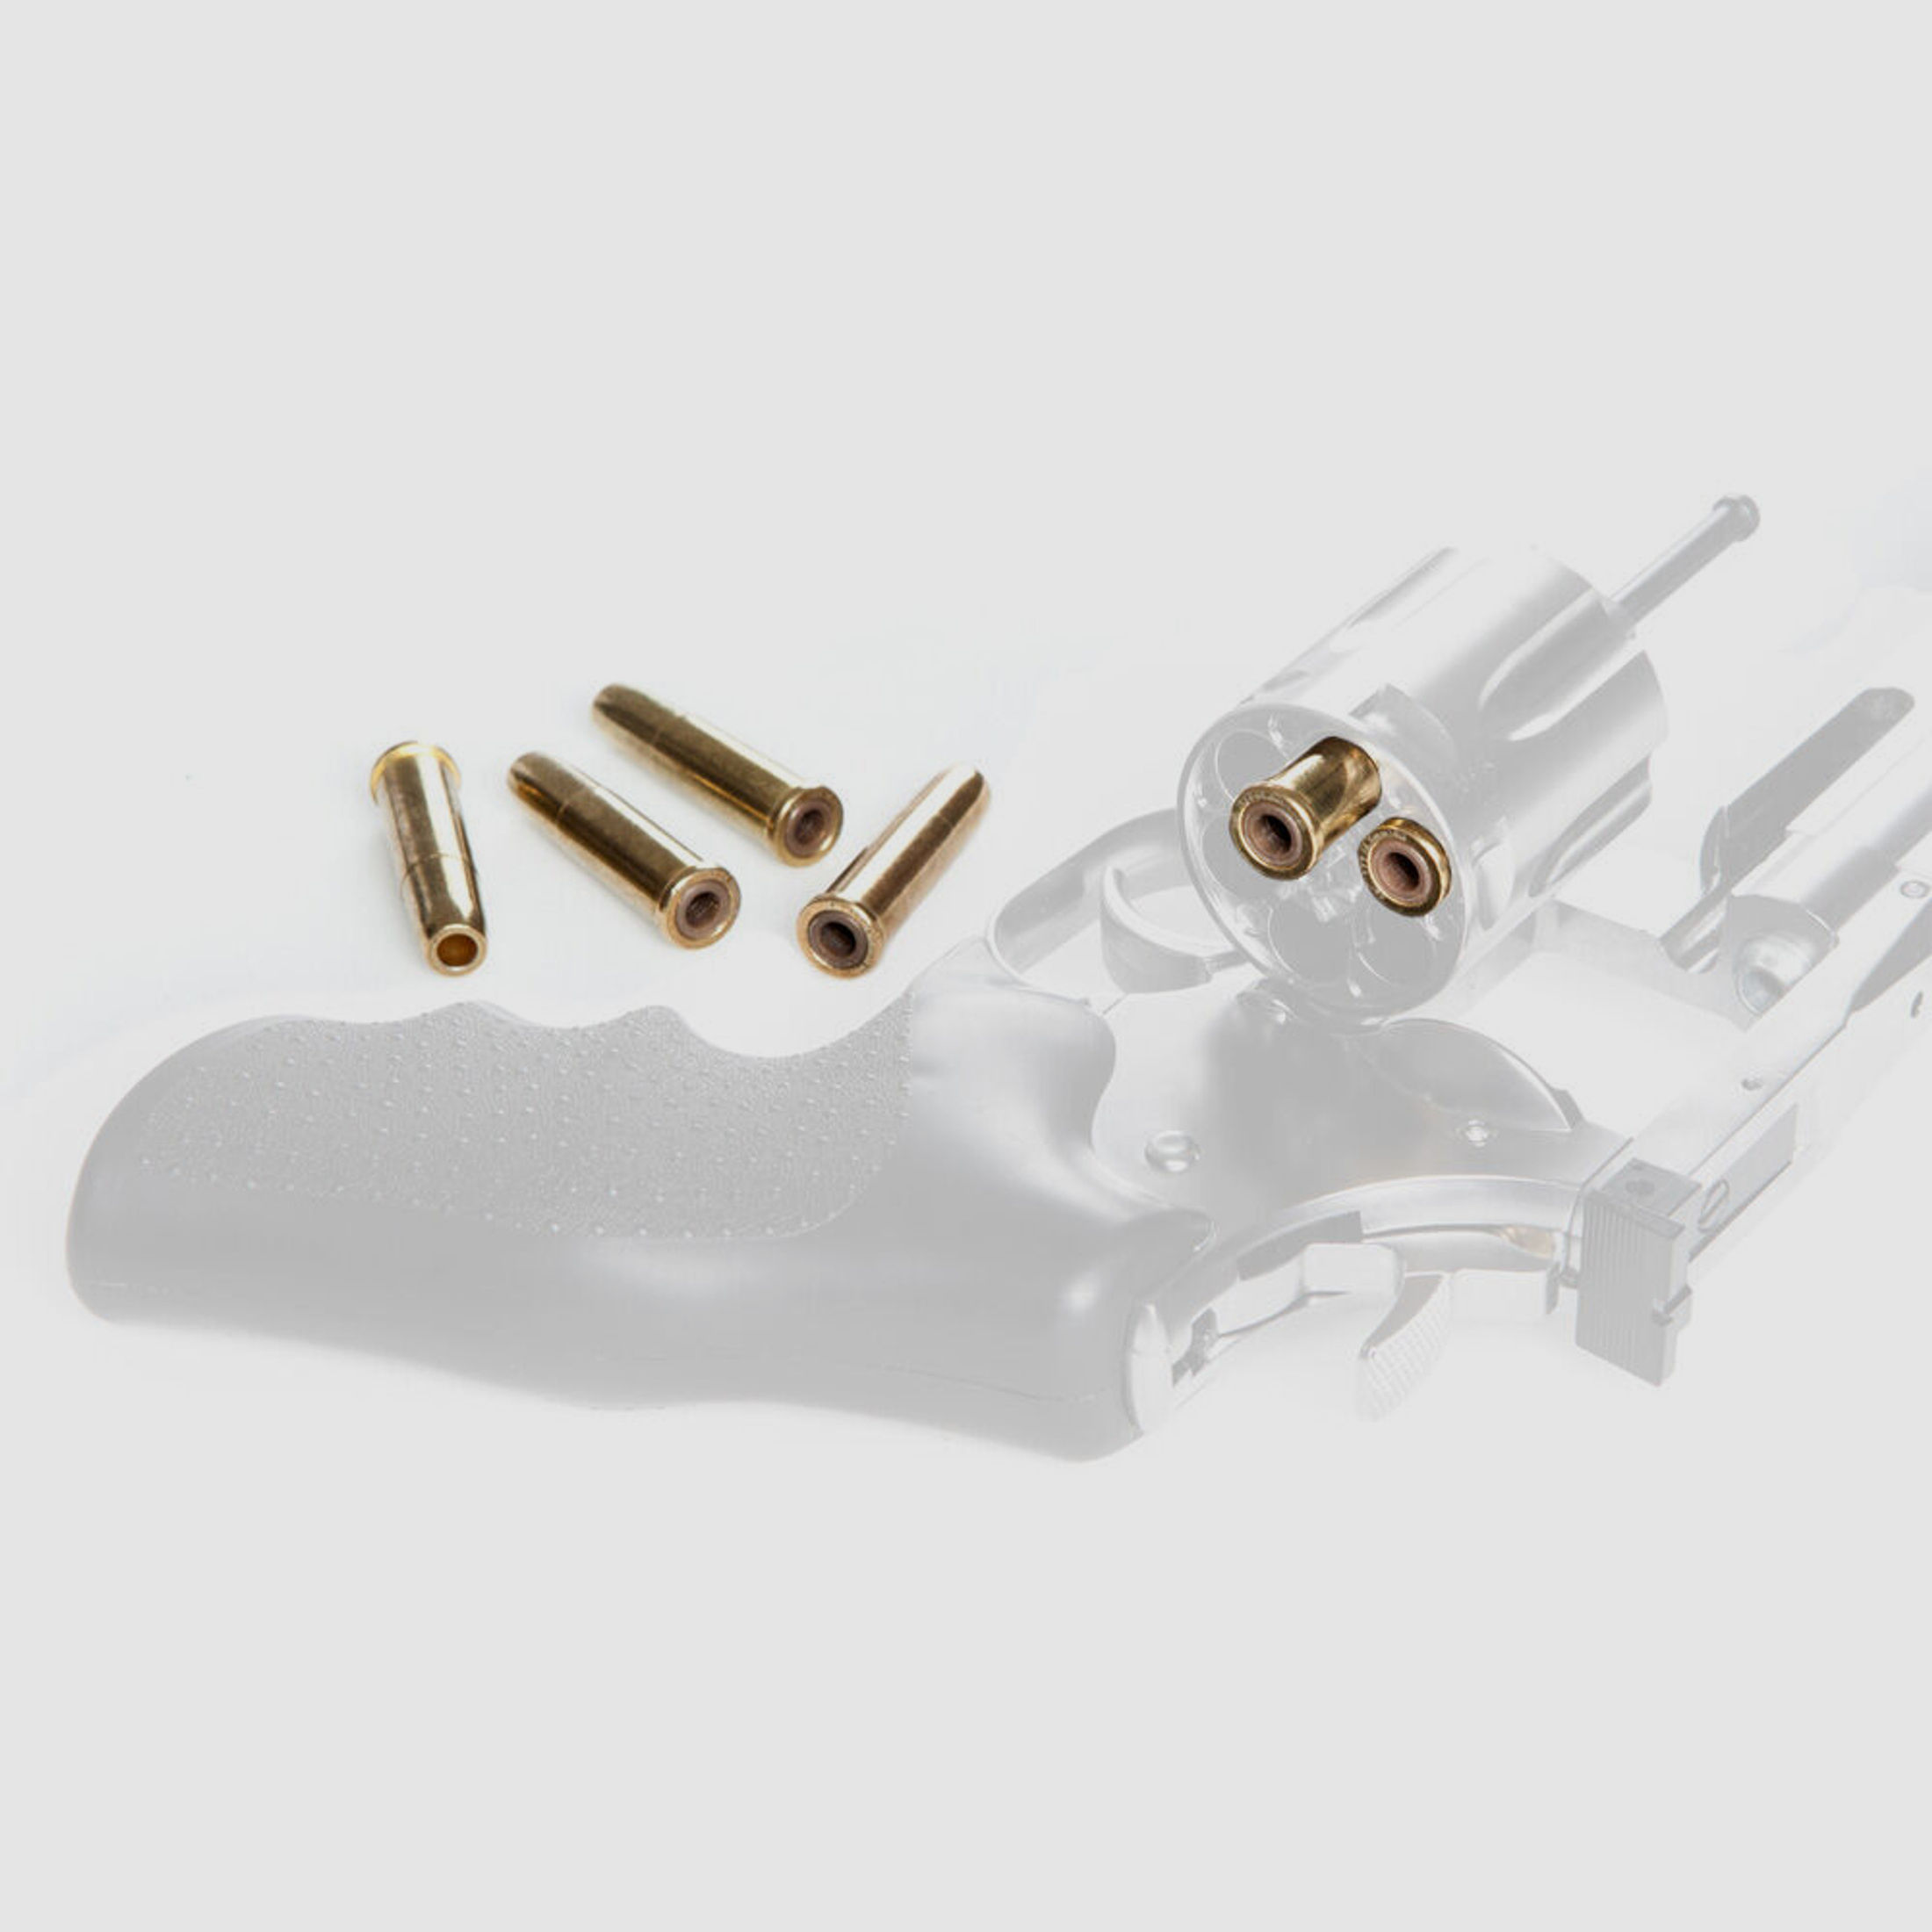 ASG Ladehülsen Dan Wesson Co2 Revolver 4,5 mm Diabolo 6 Stück